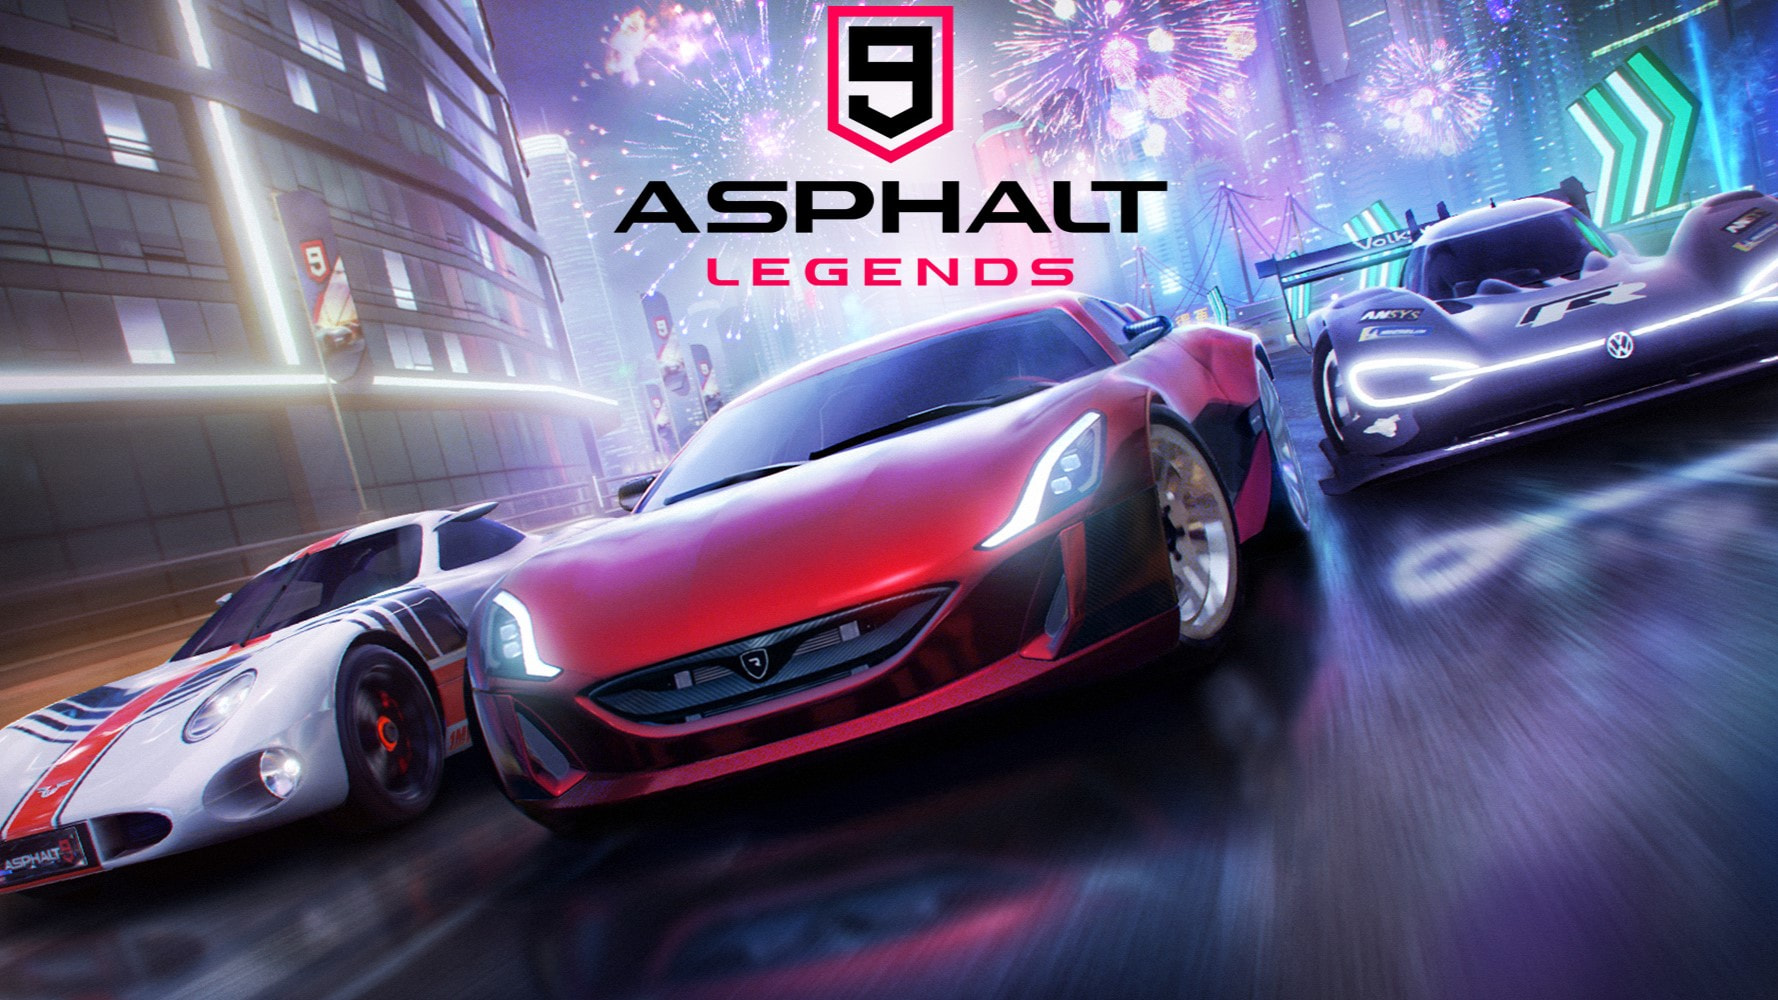 Asphalt 9: Legends has over 4 million downloads in just a week on